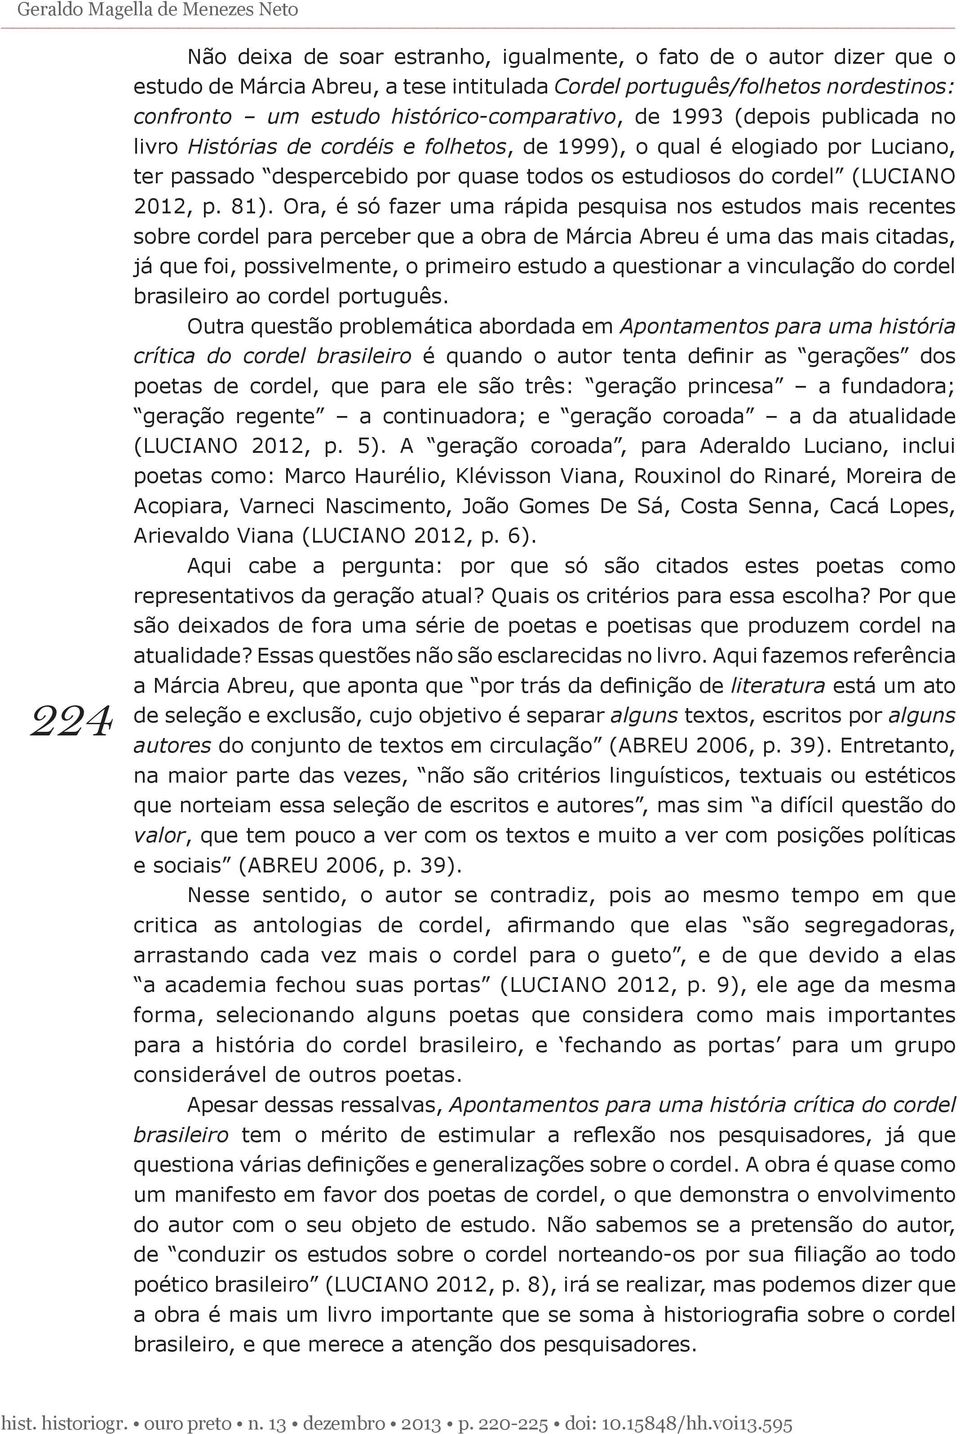 cordel (LUCIANO 2012, p. 81).